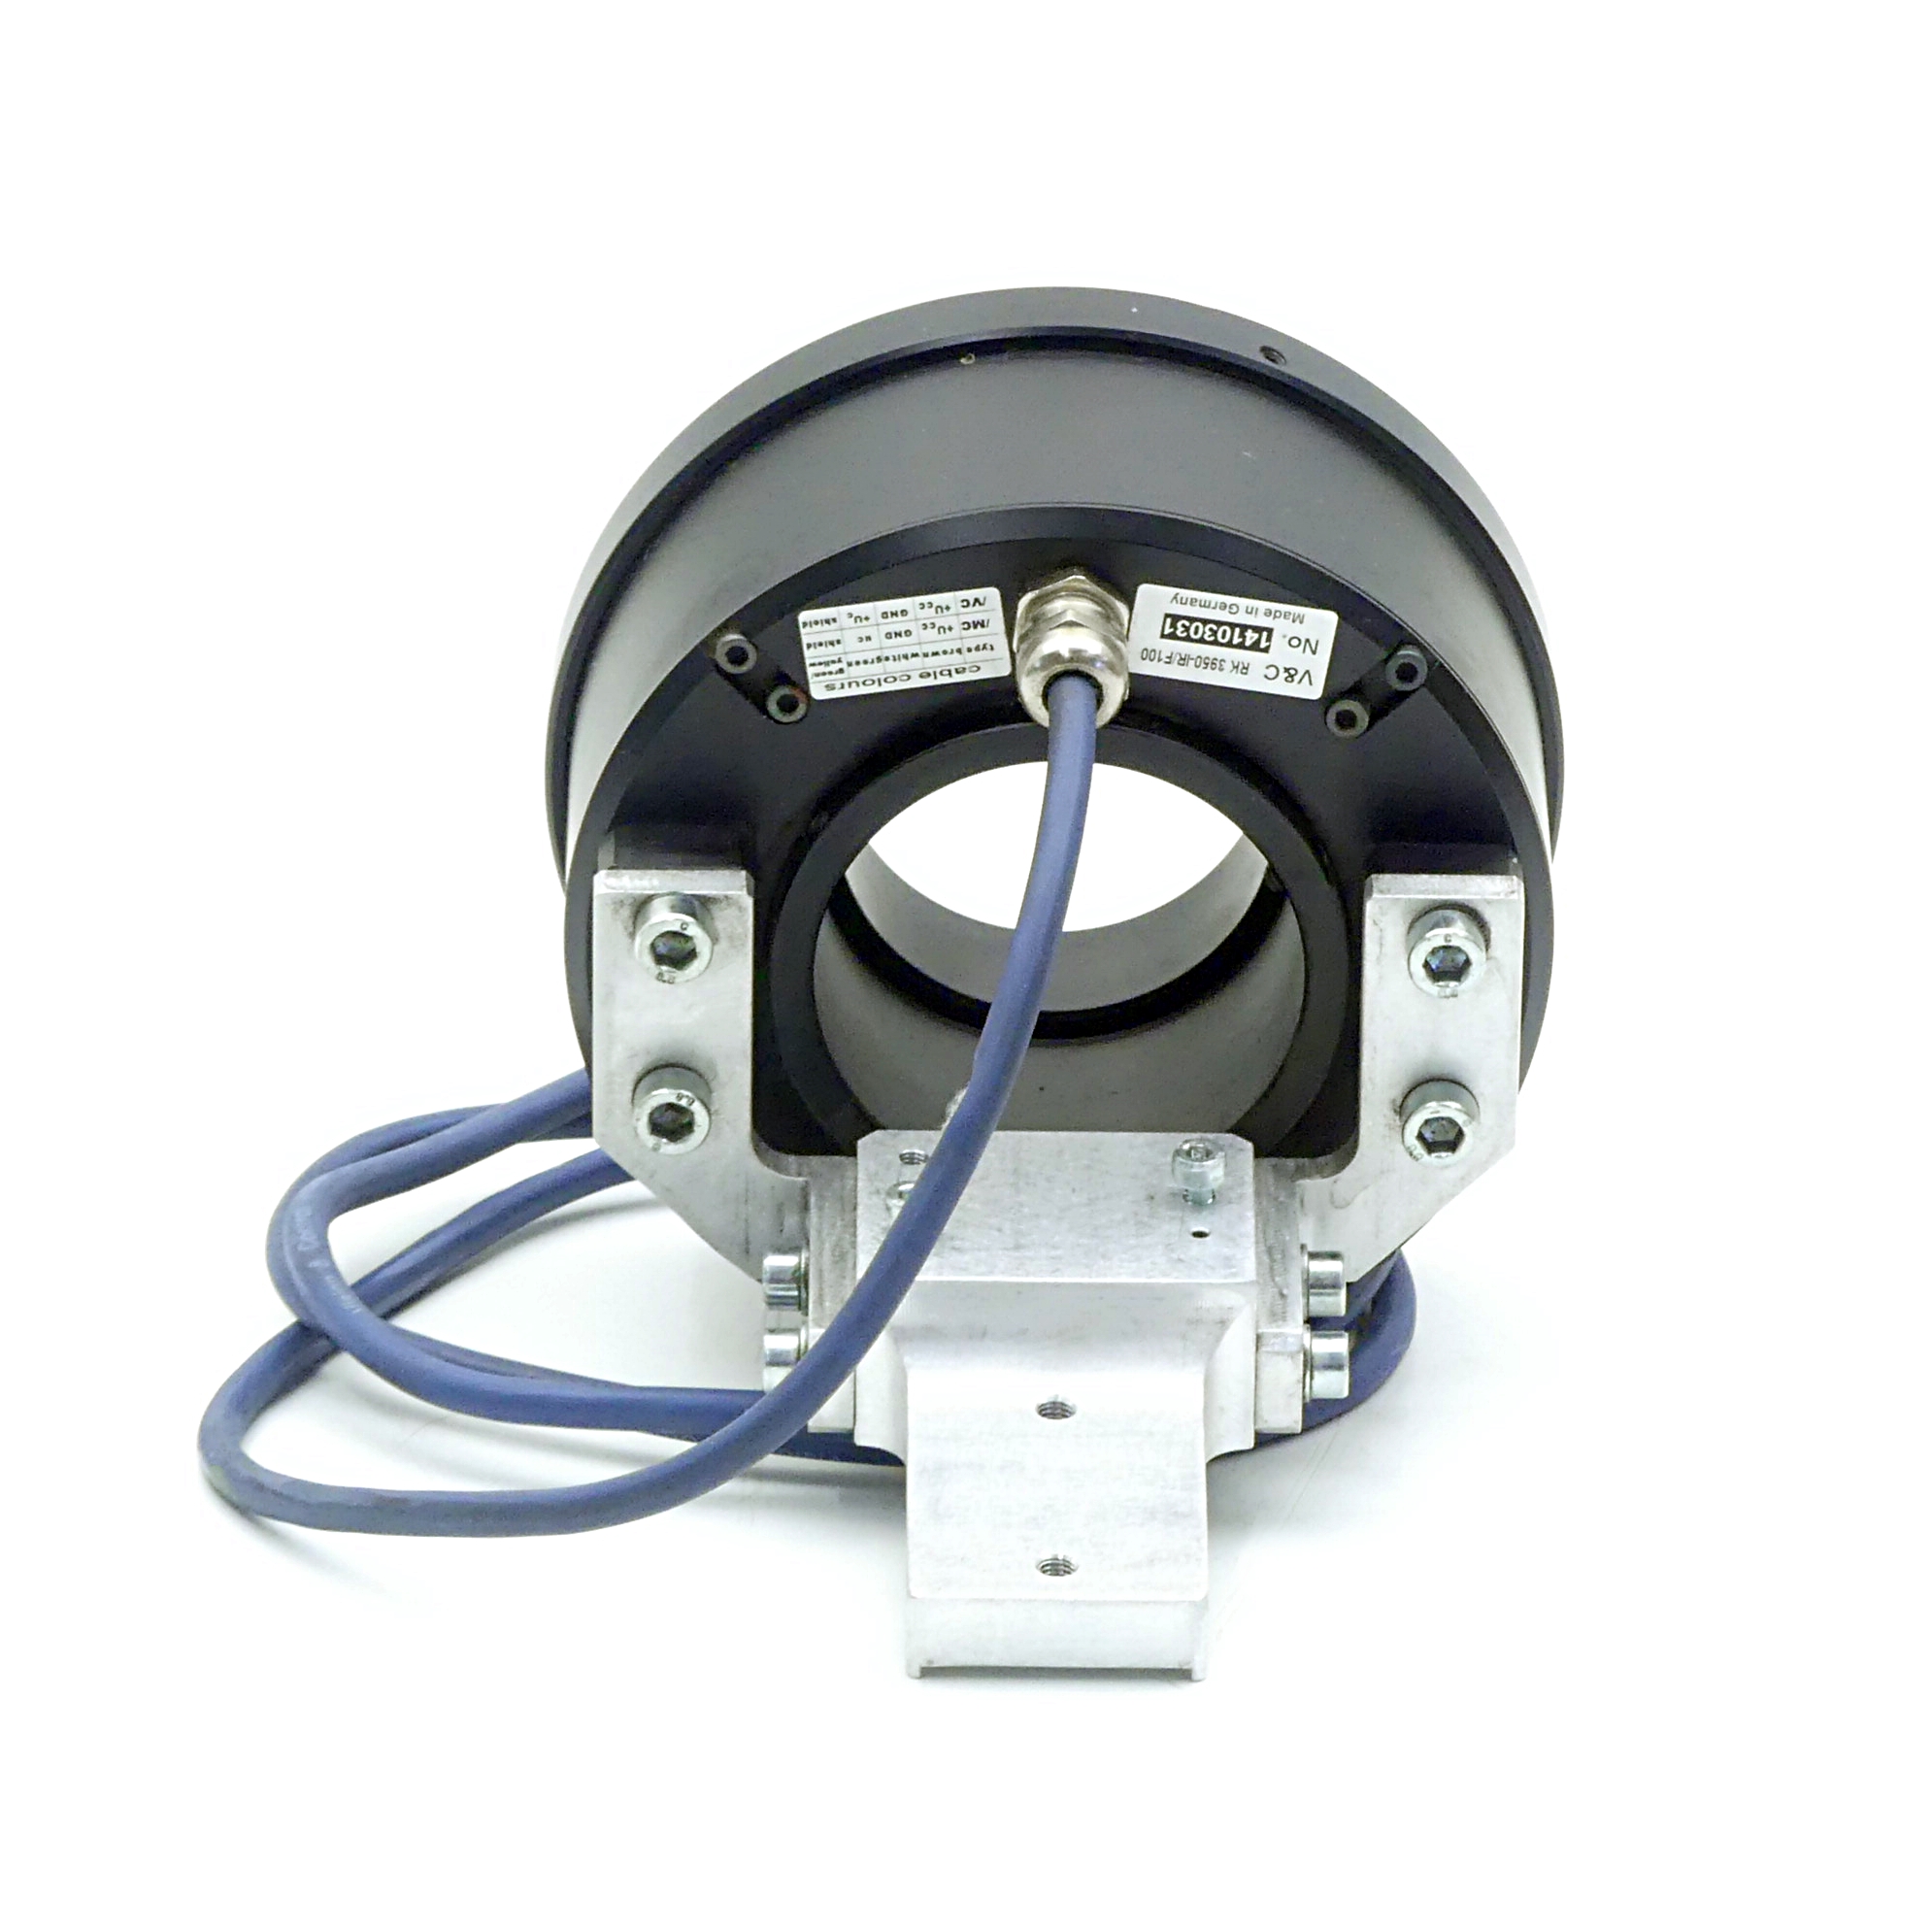 Ringbeleuchtung mit Halterung für die Kamera CCD XC-ES50 